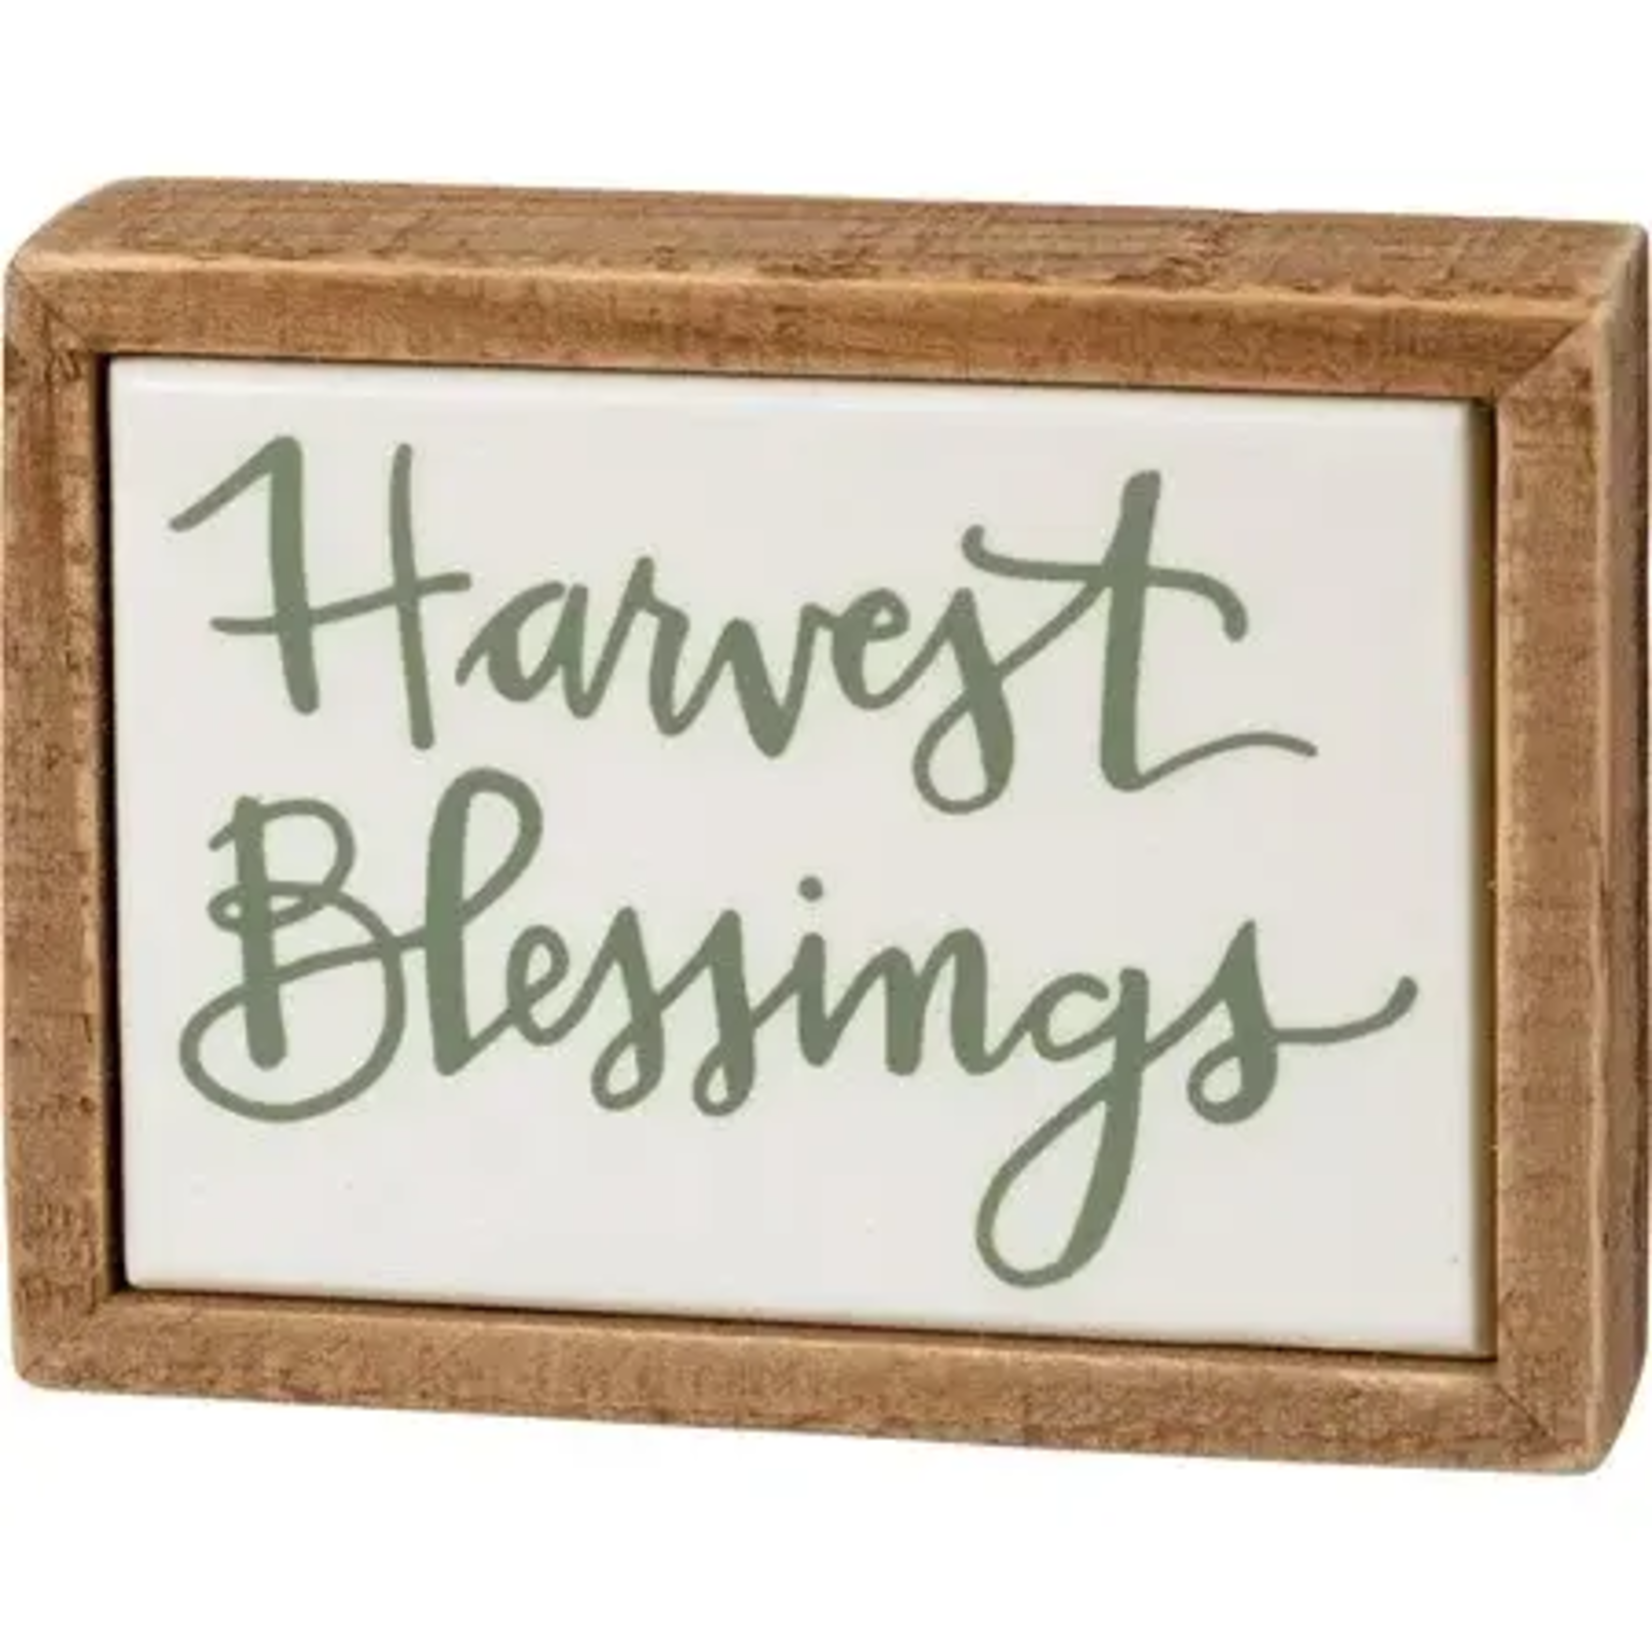 Harvest Blessings Box Sign Mini